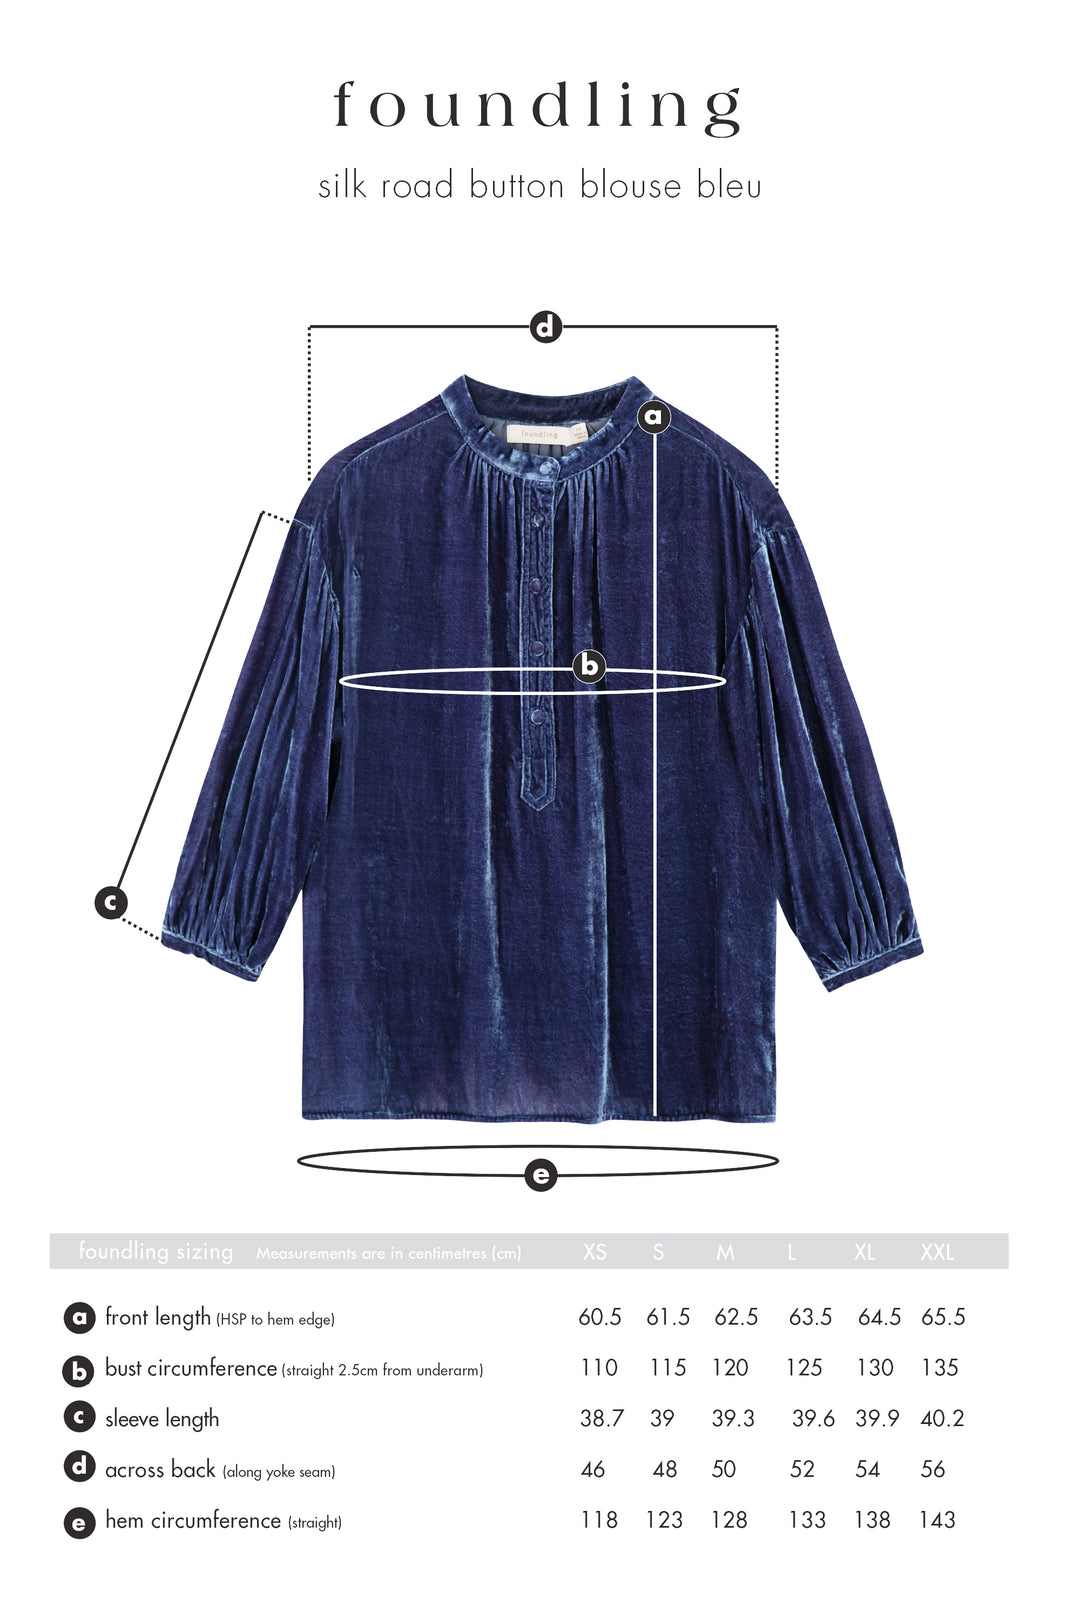 foundling silk velvet button blouse blue size guide